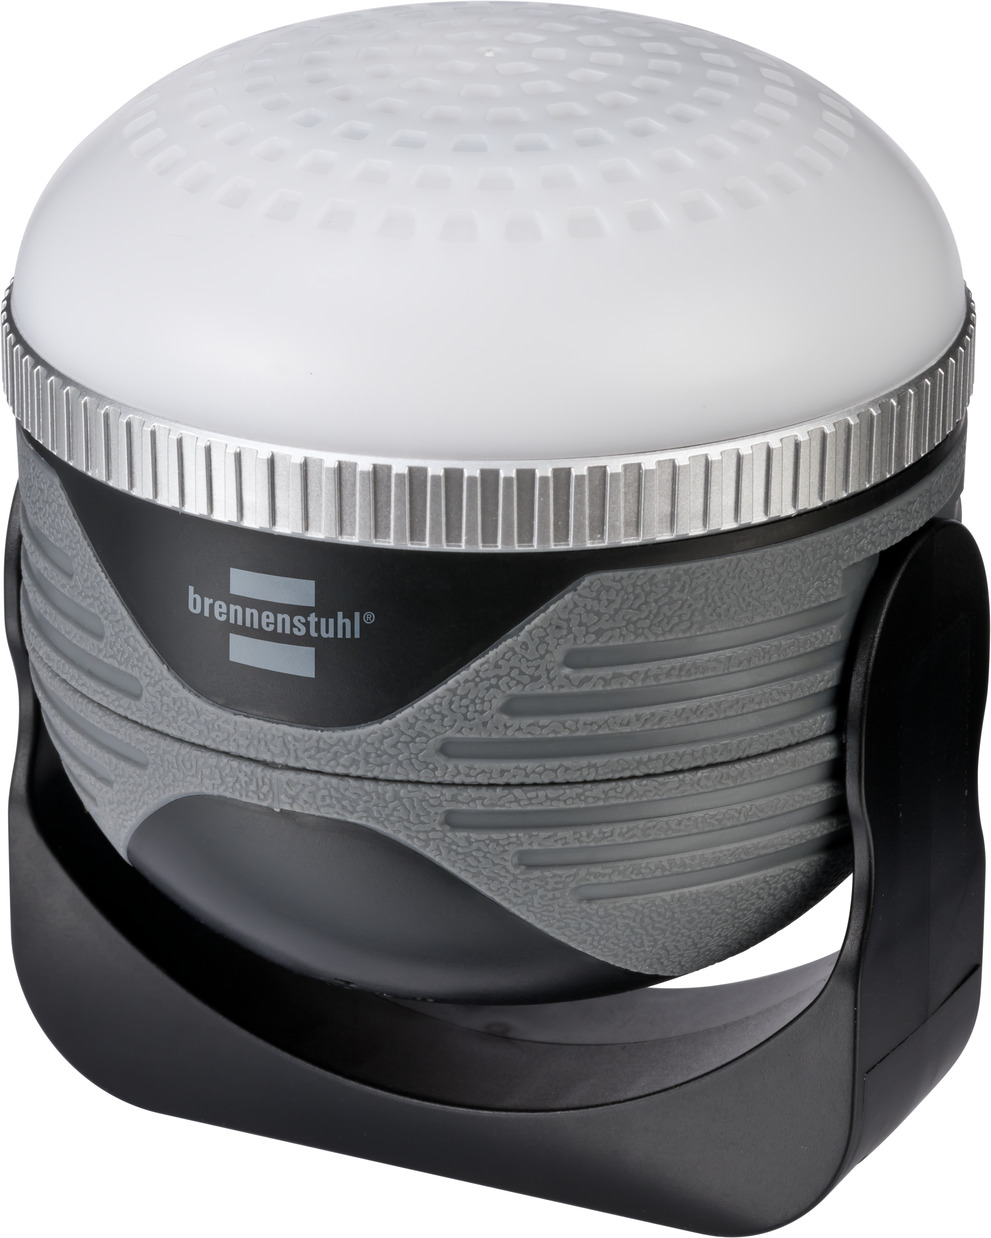 LED Akku Lautsprecher OLI Leuchte | 350lm Outdoor IP44 310 Bluetooth brennenstuhl® mit AB